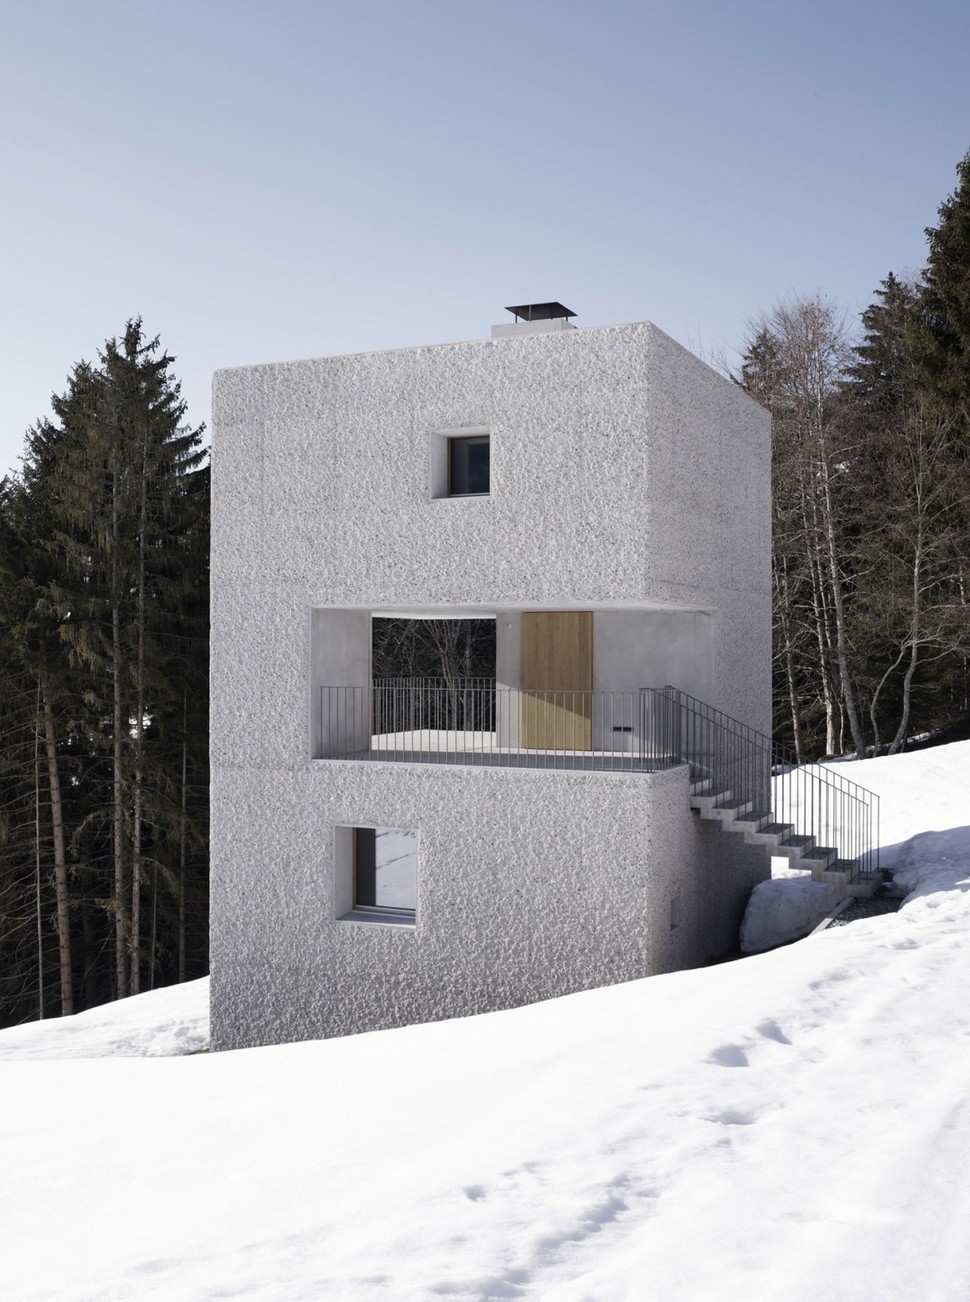 cubic-concrete-mountain-cabin-by-marte.marte-architekten-4.jpg